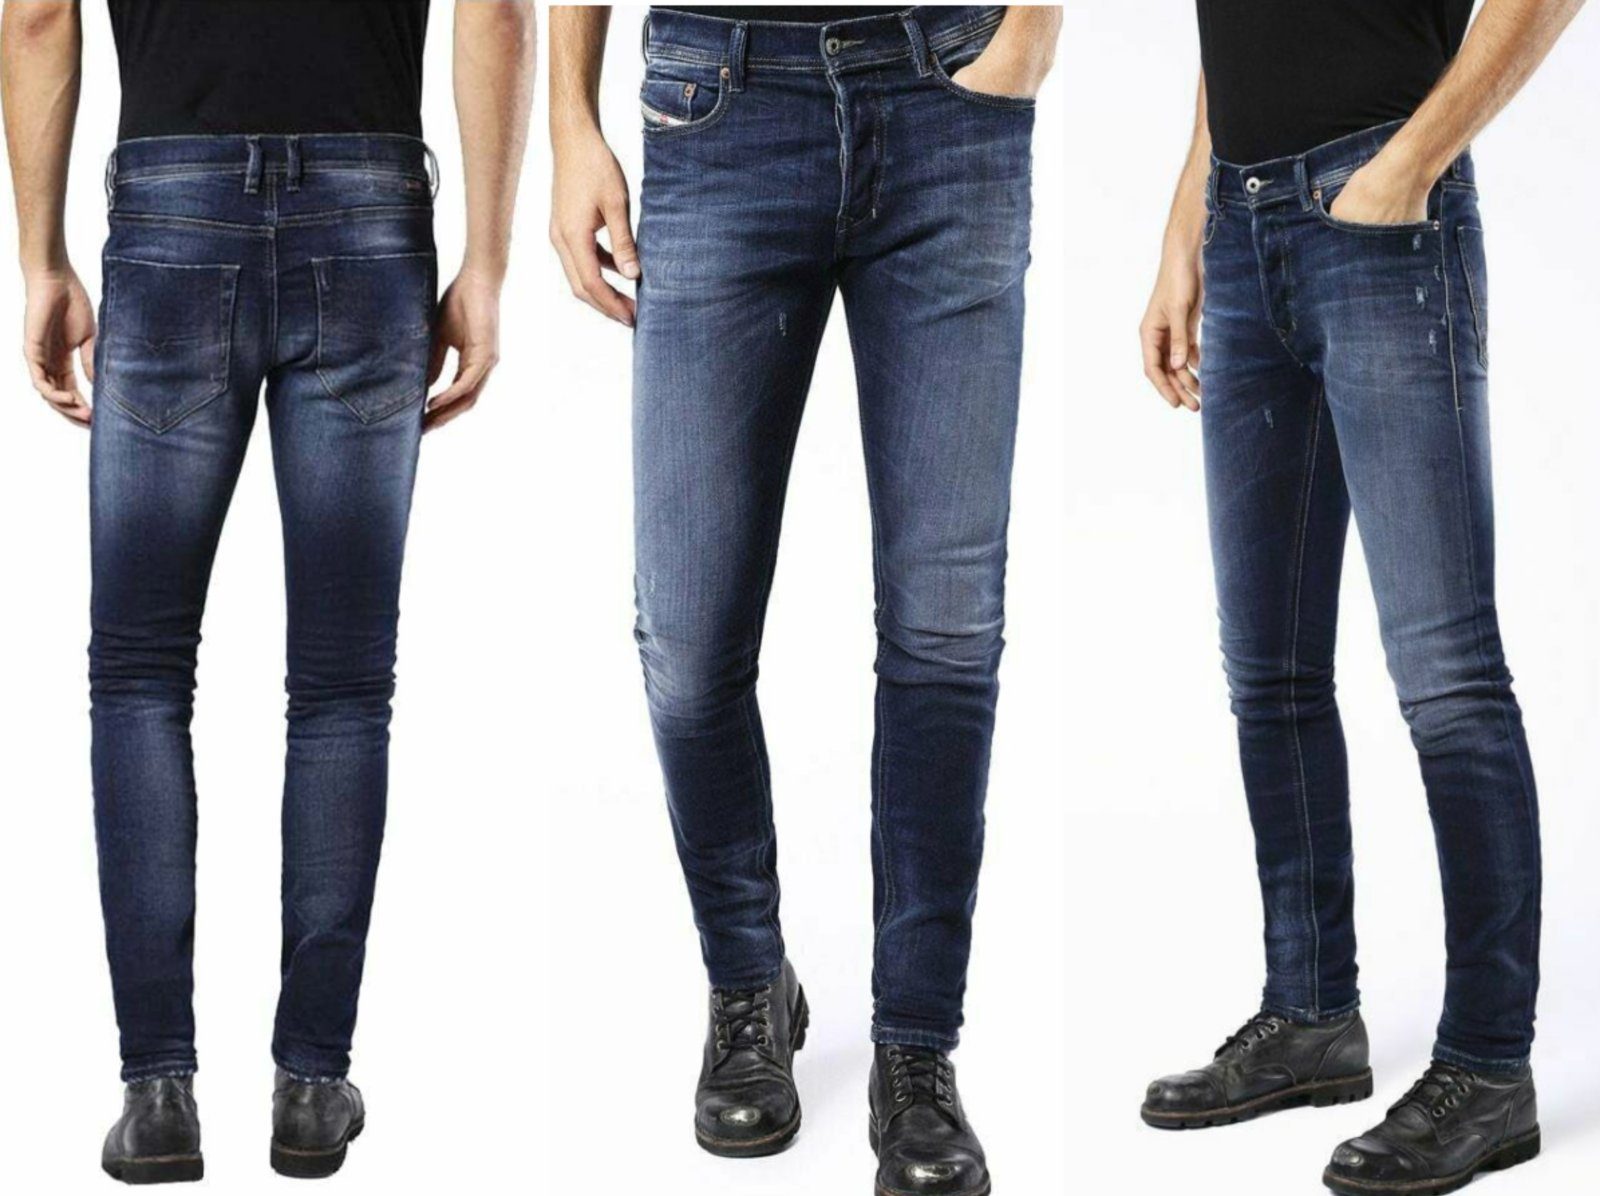 Diesel 5-Pocket-Jeans Diesel Men's Tepphar 0860L Stretch Slim Carrot Fit  Jeans Pants Hose Bn